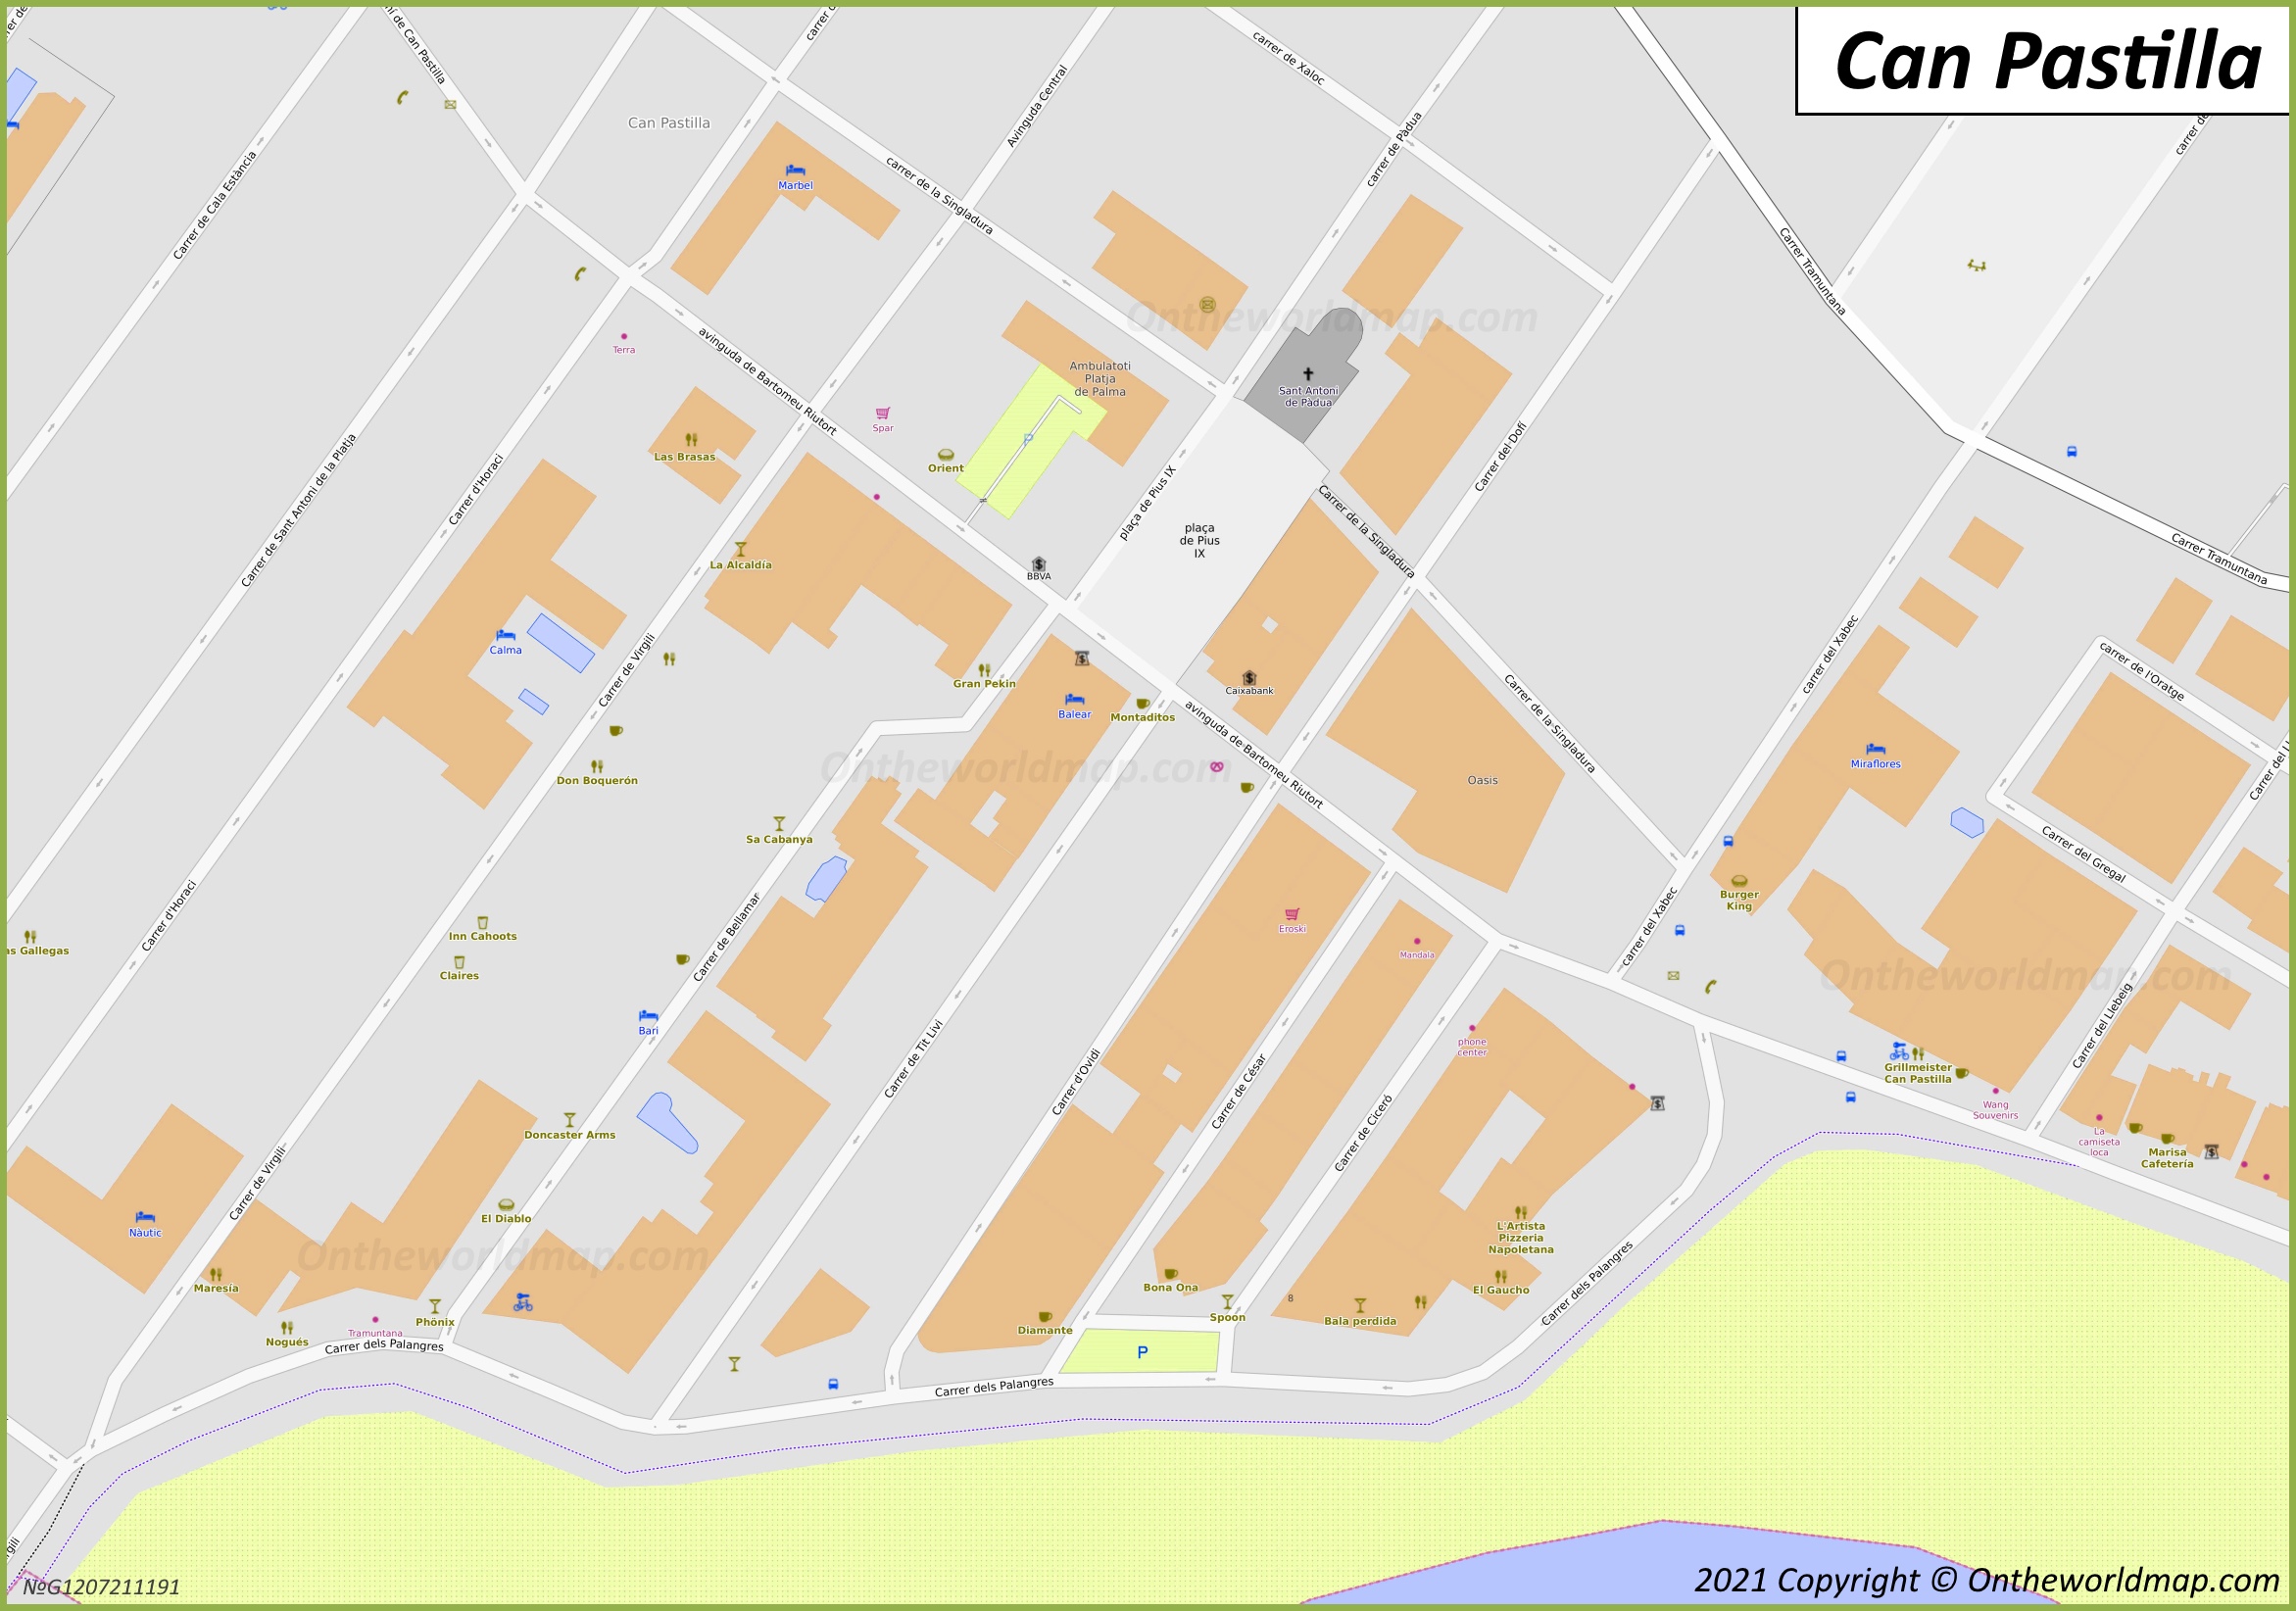 Can Pastilla - Mapa de la Ciudad Vieja